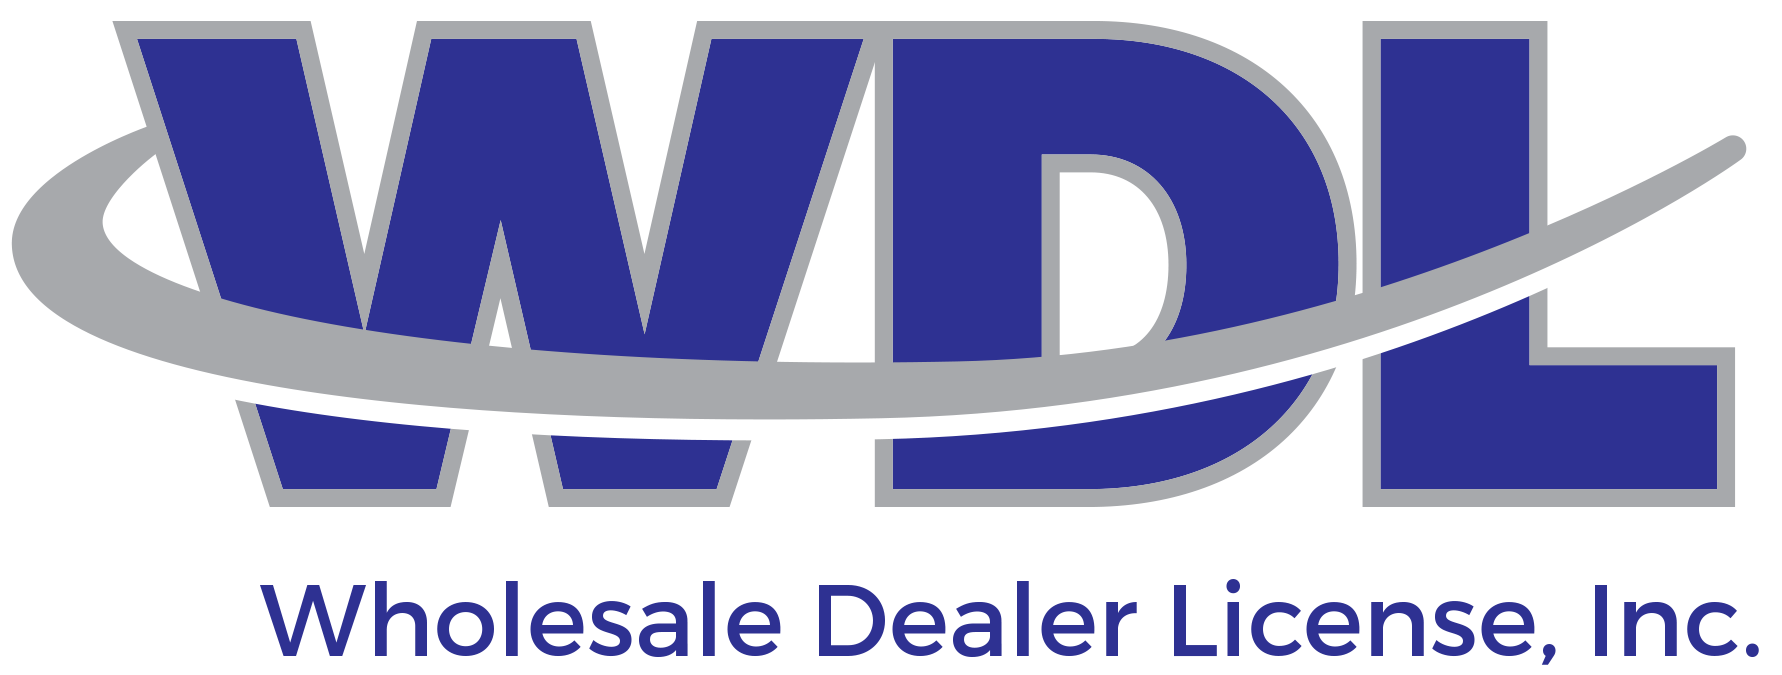 Wholesale Dealer License